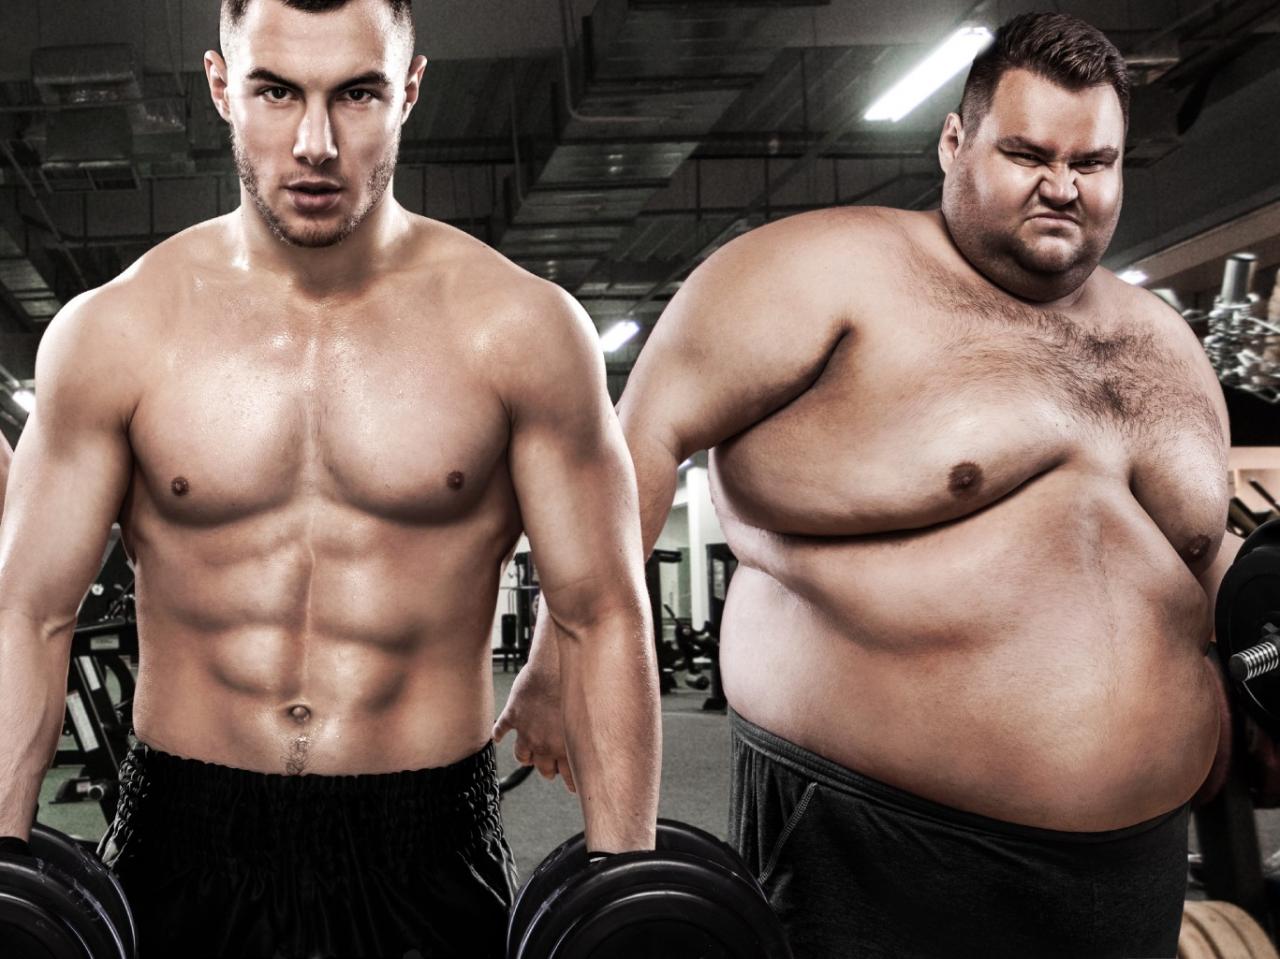 Избавляемся от подкожного жира: советы по тренировкам и питанию - Похудение - Фитнес - MEN's LIFE